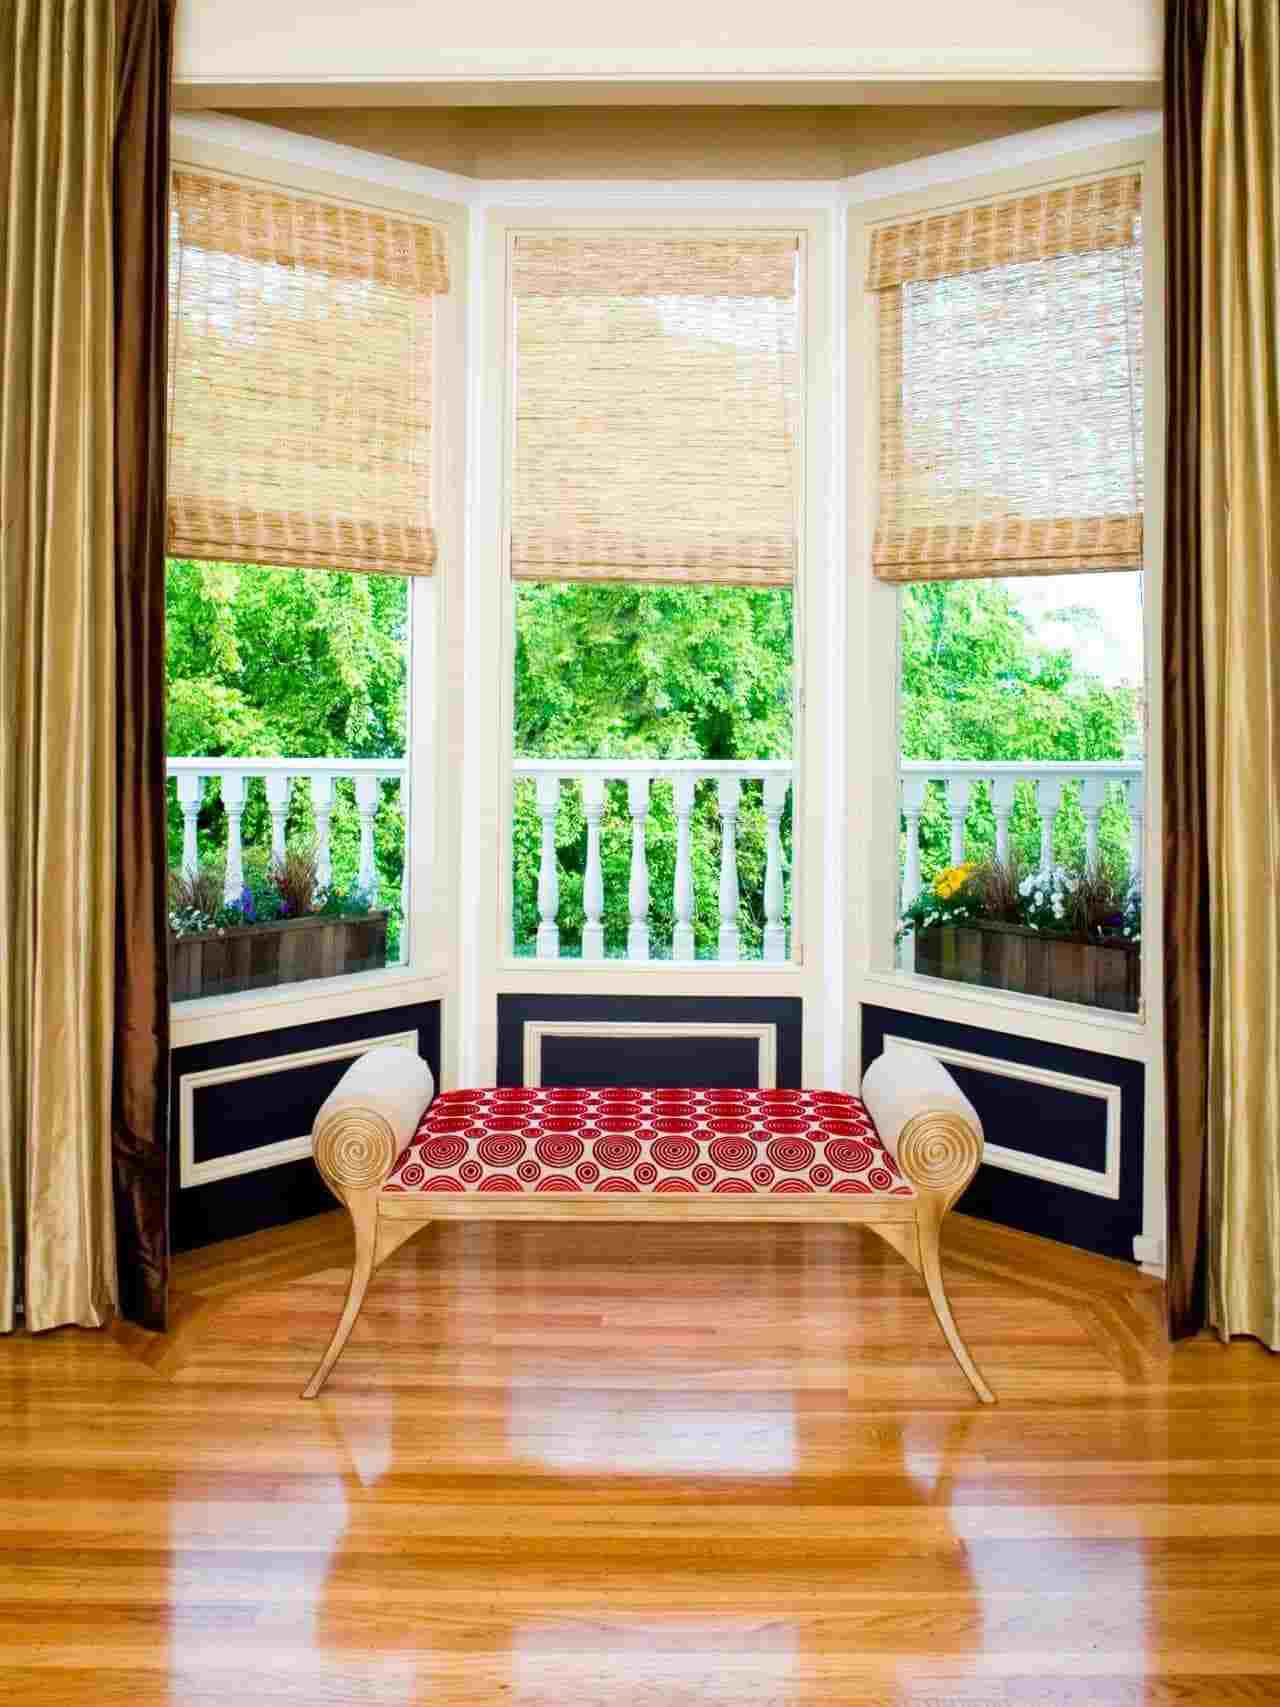 Erker gestalten Vintage Einrichtung Ideen Sitzbank Gardinen Holzboden Wohntrends